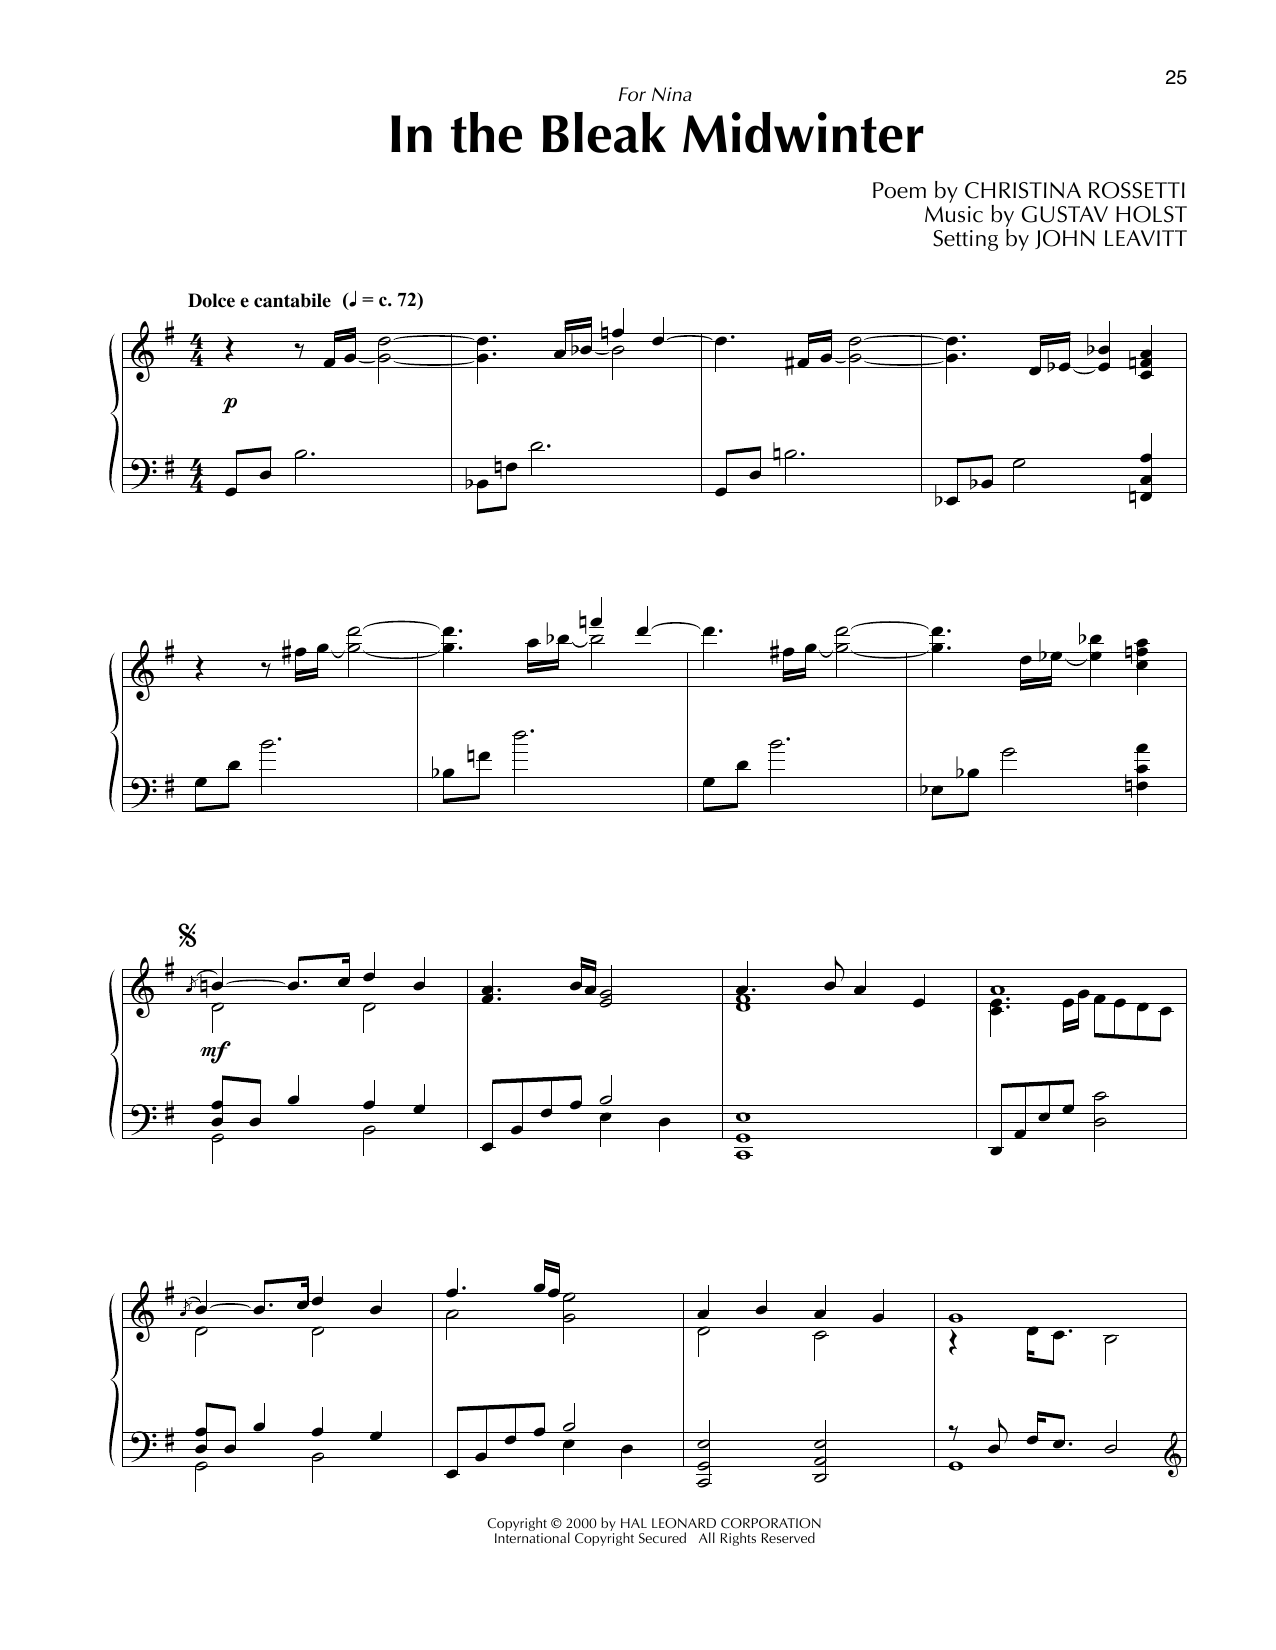 Gustav Holst In The Bleak Midwinter (arr. John Leavitt) Sheet Music Notes & Chords for 2-Part Choir - Download or Print PDF